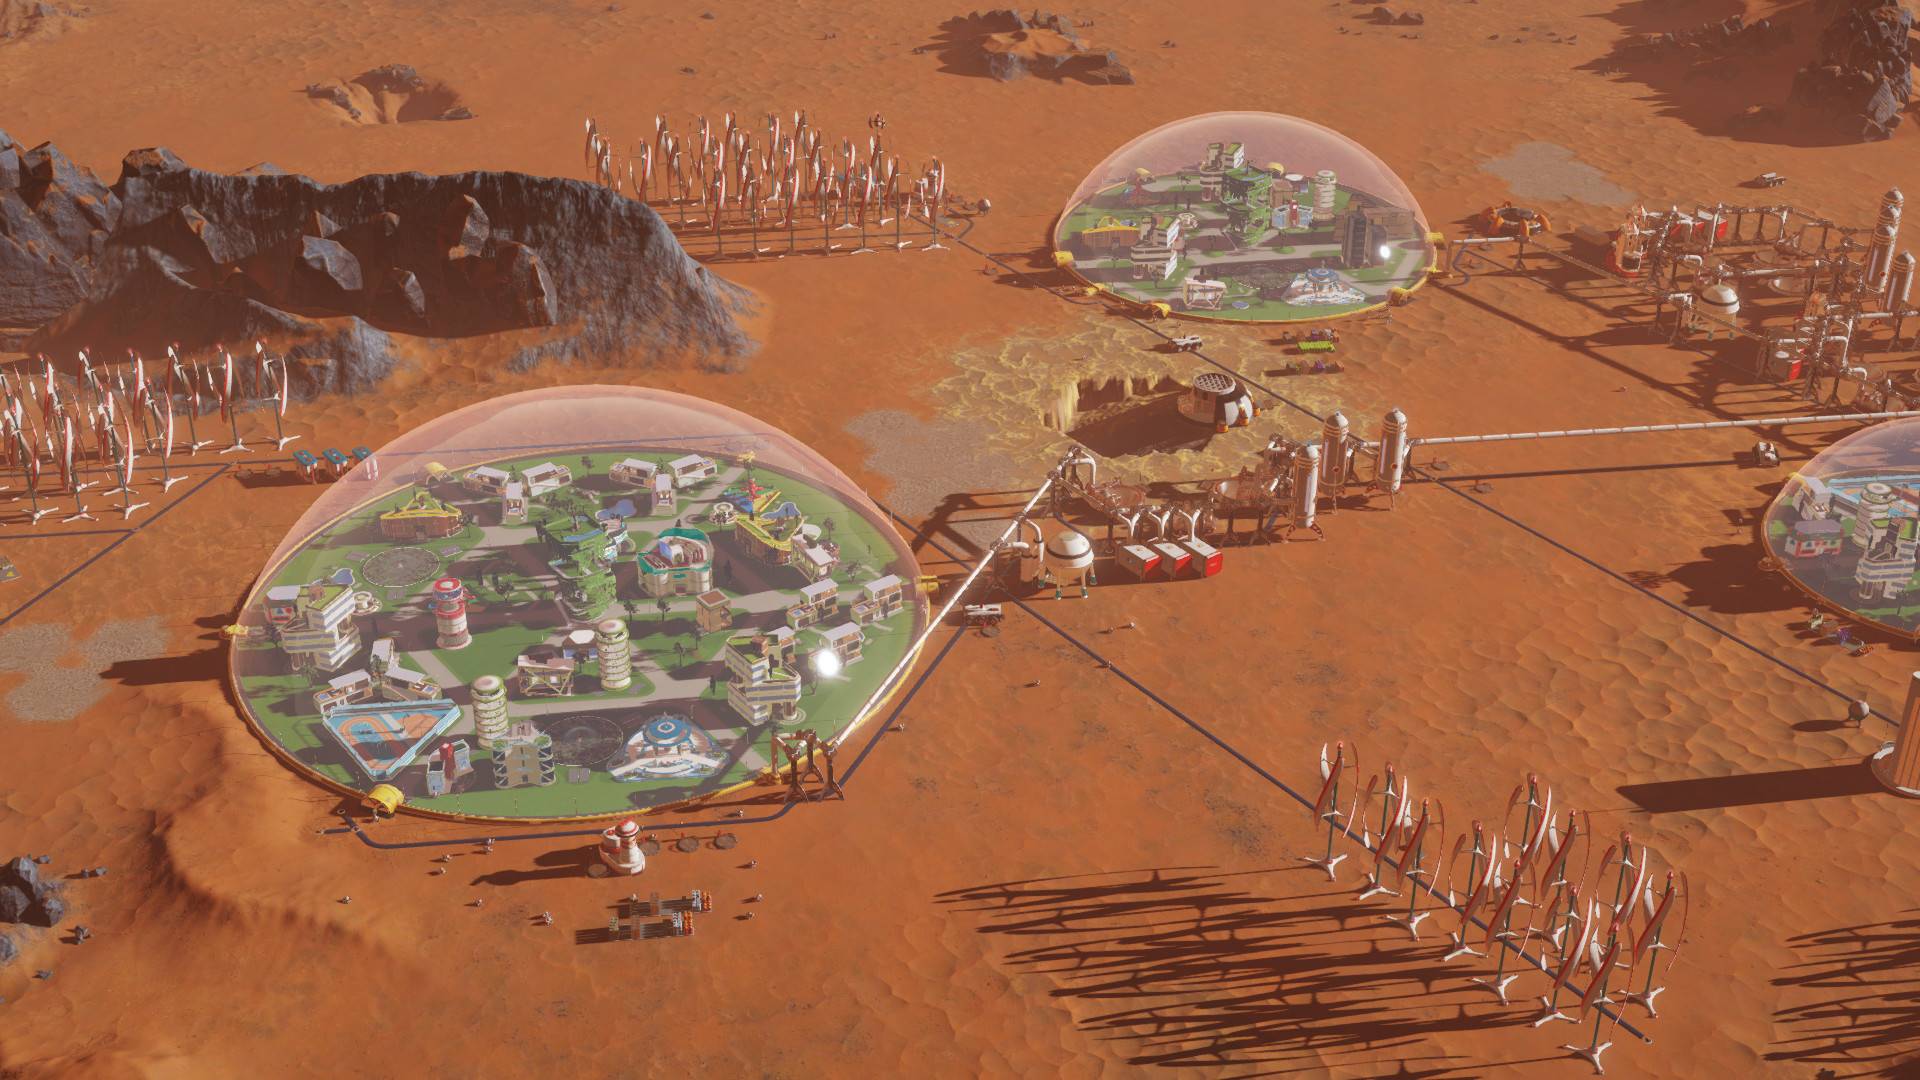 משחקי בניית העיר הטובים ביותר: מאדים שורדים. תמונה מציגה שני התנחלויות במאדים בתוך ביו -ספירות